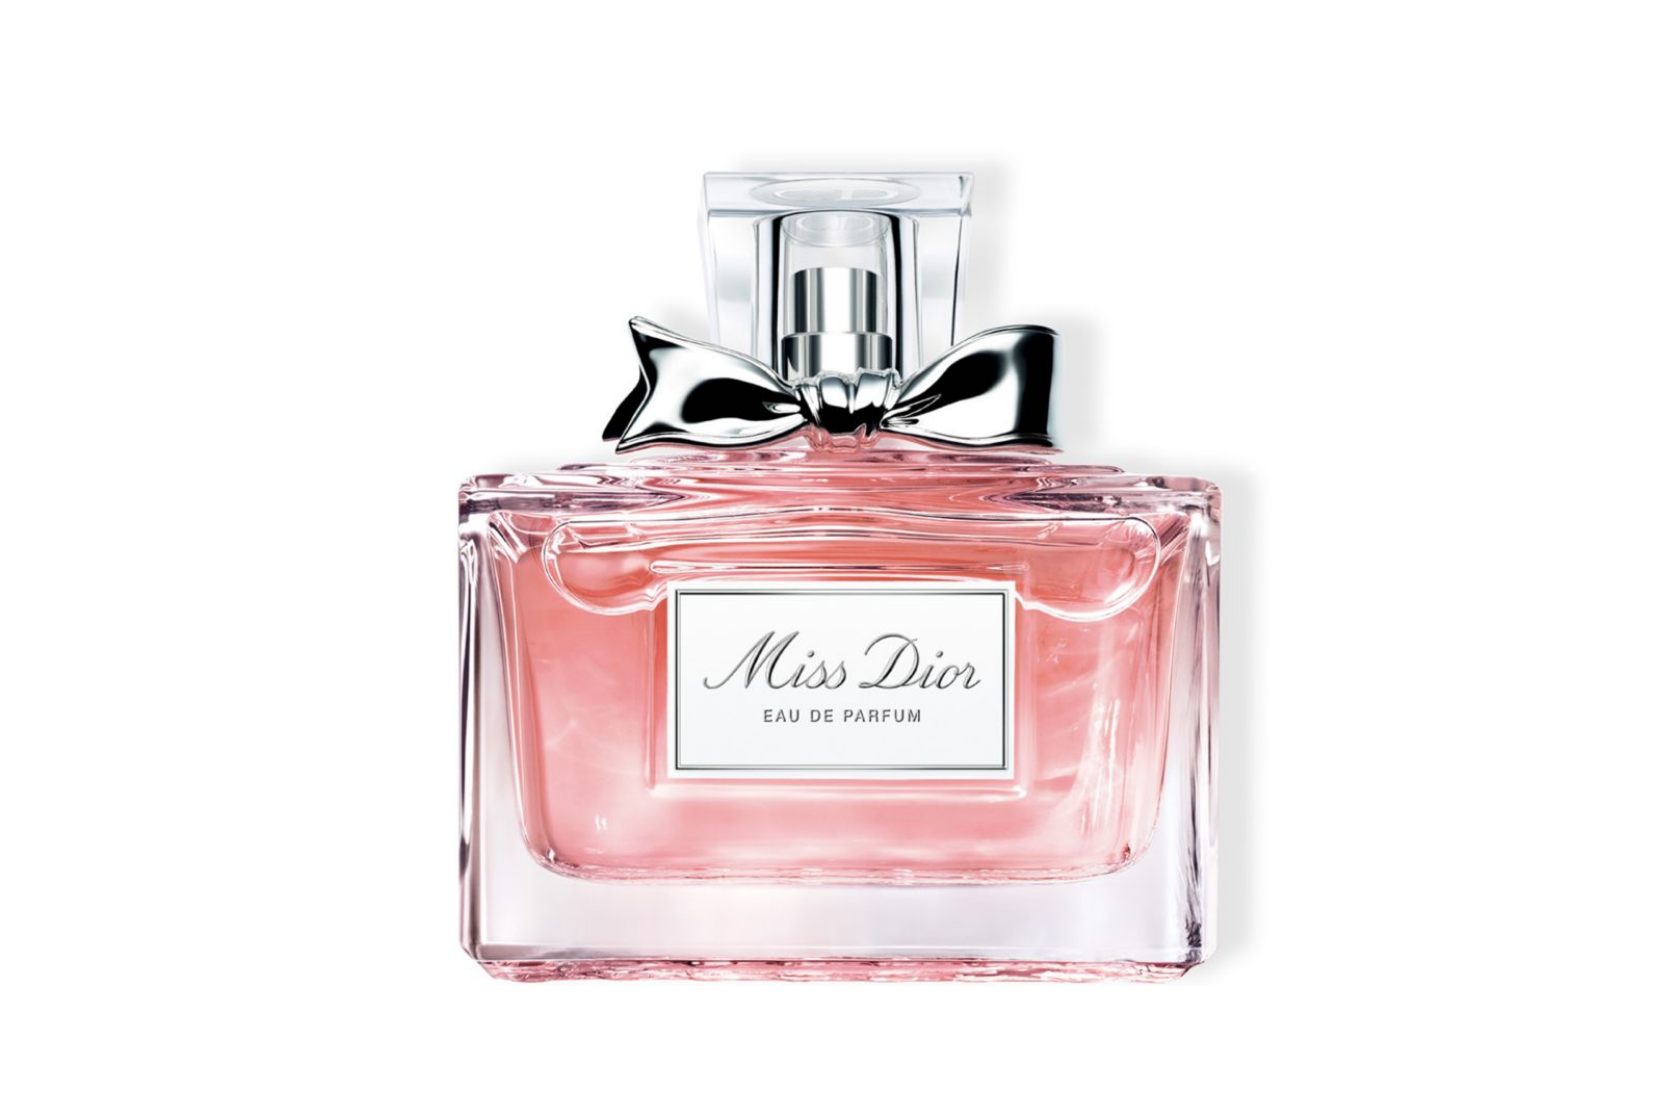 Product Review: Miss Dior Eau de Parfum - fashionandstylepolice  fashionandstylepolice